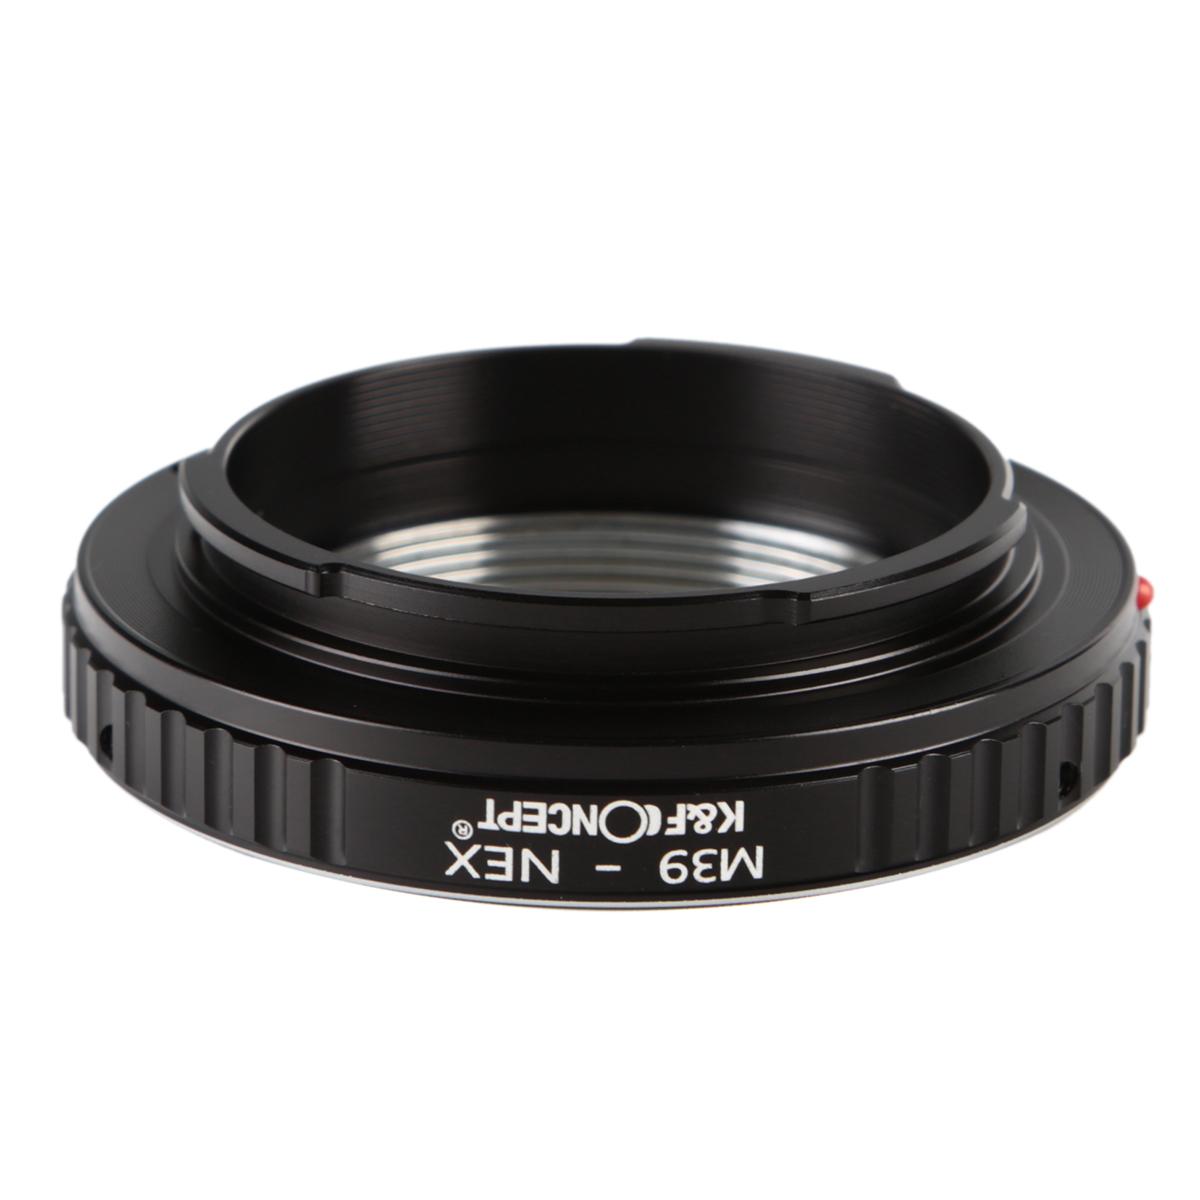 K&F Concept Lens Adapter KF06.251 for M39 - NEX